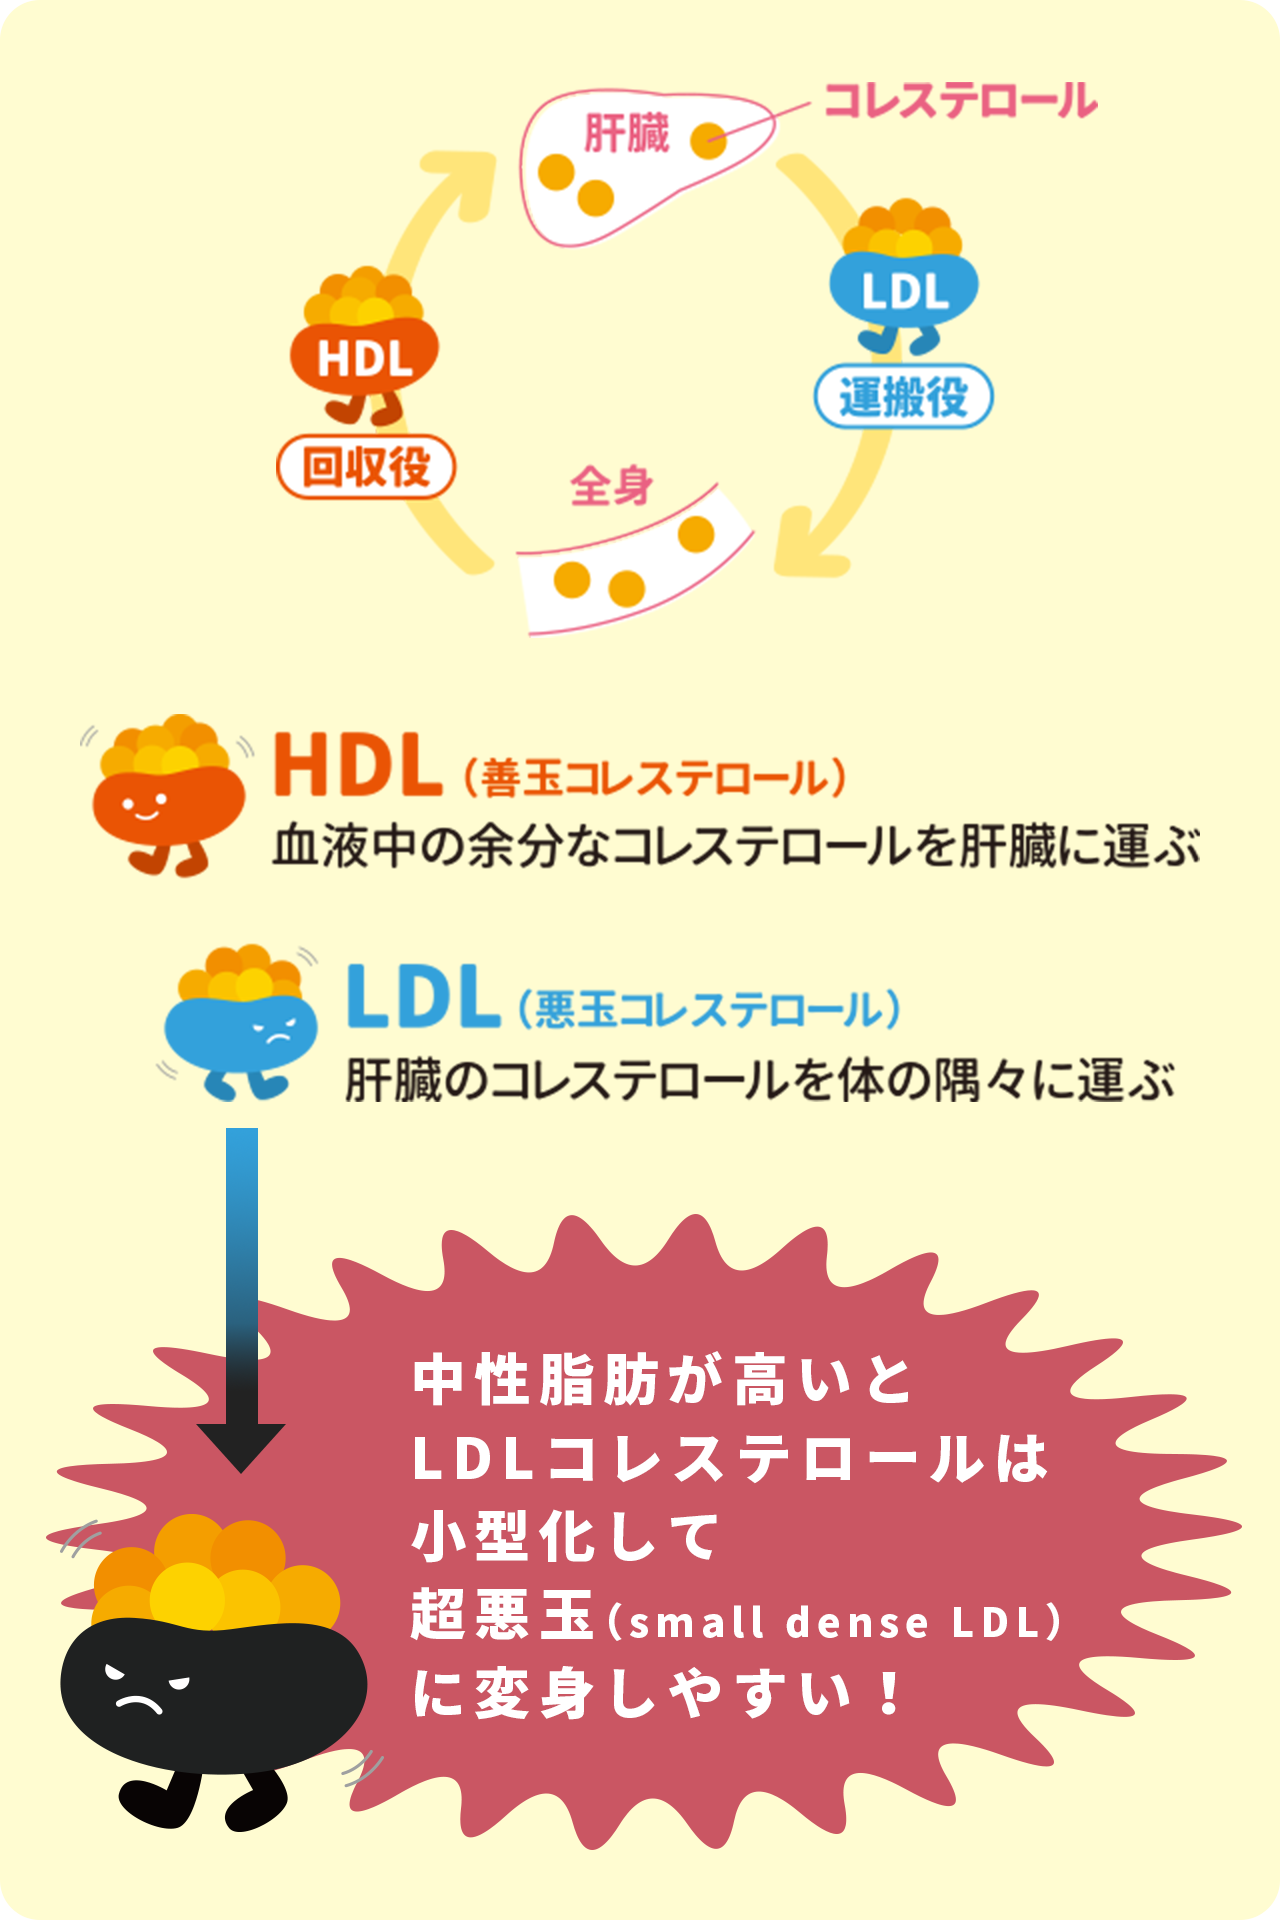 HDL（善玉コレステロール）は血液中の余分なコレステロールを肝臓に運ぶ。反対にLDL（悪玉コレステロール）は肝臓のコレステロールを体の隅々に運ぶ。